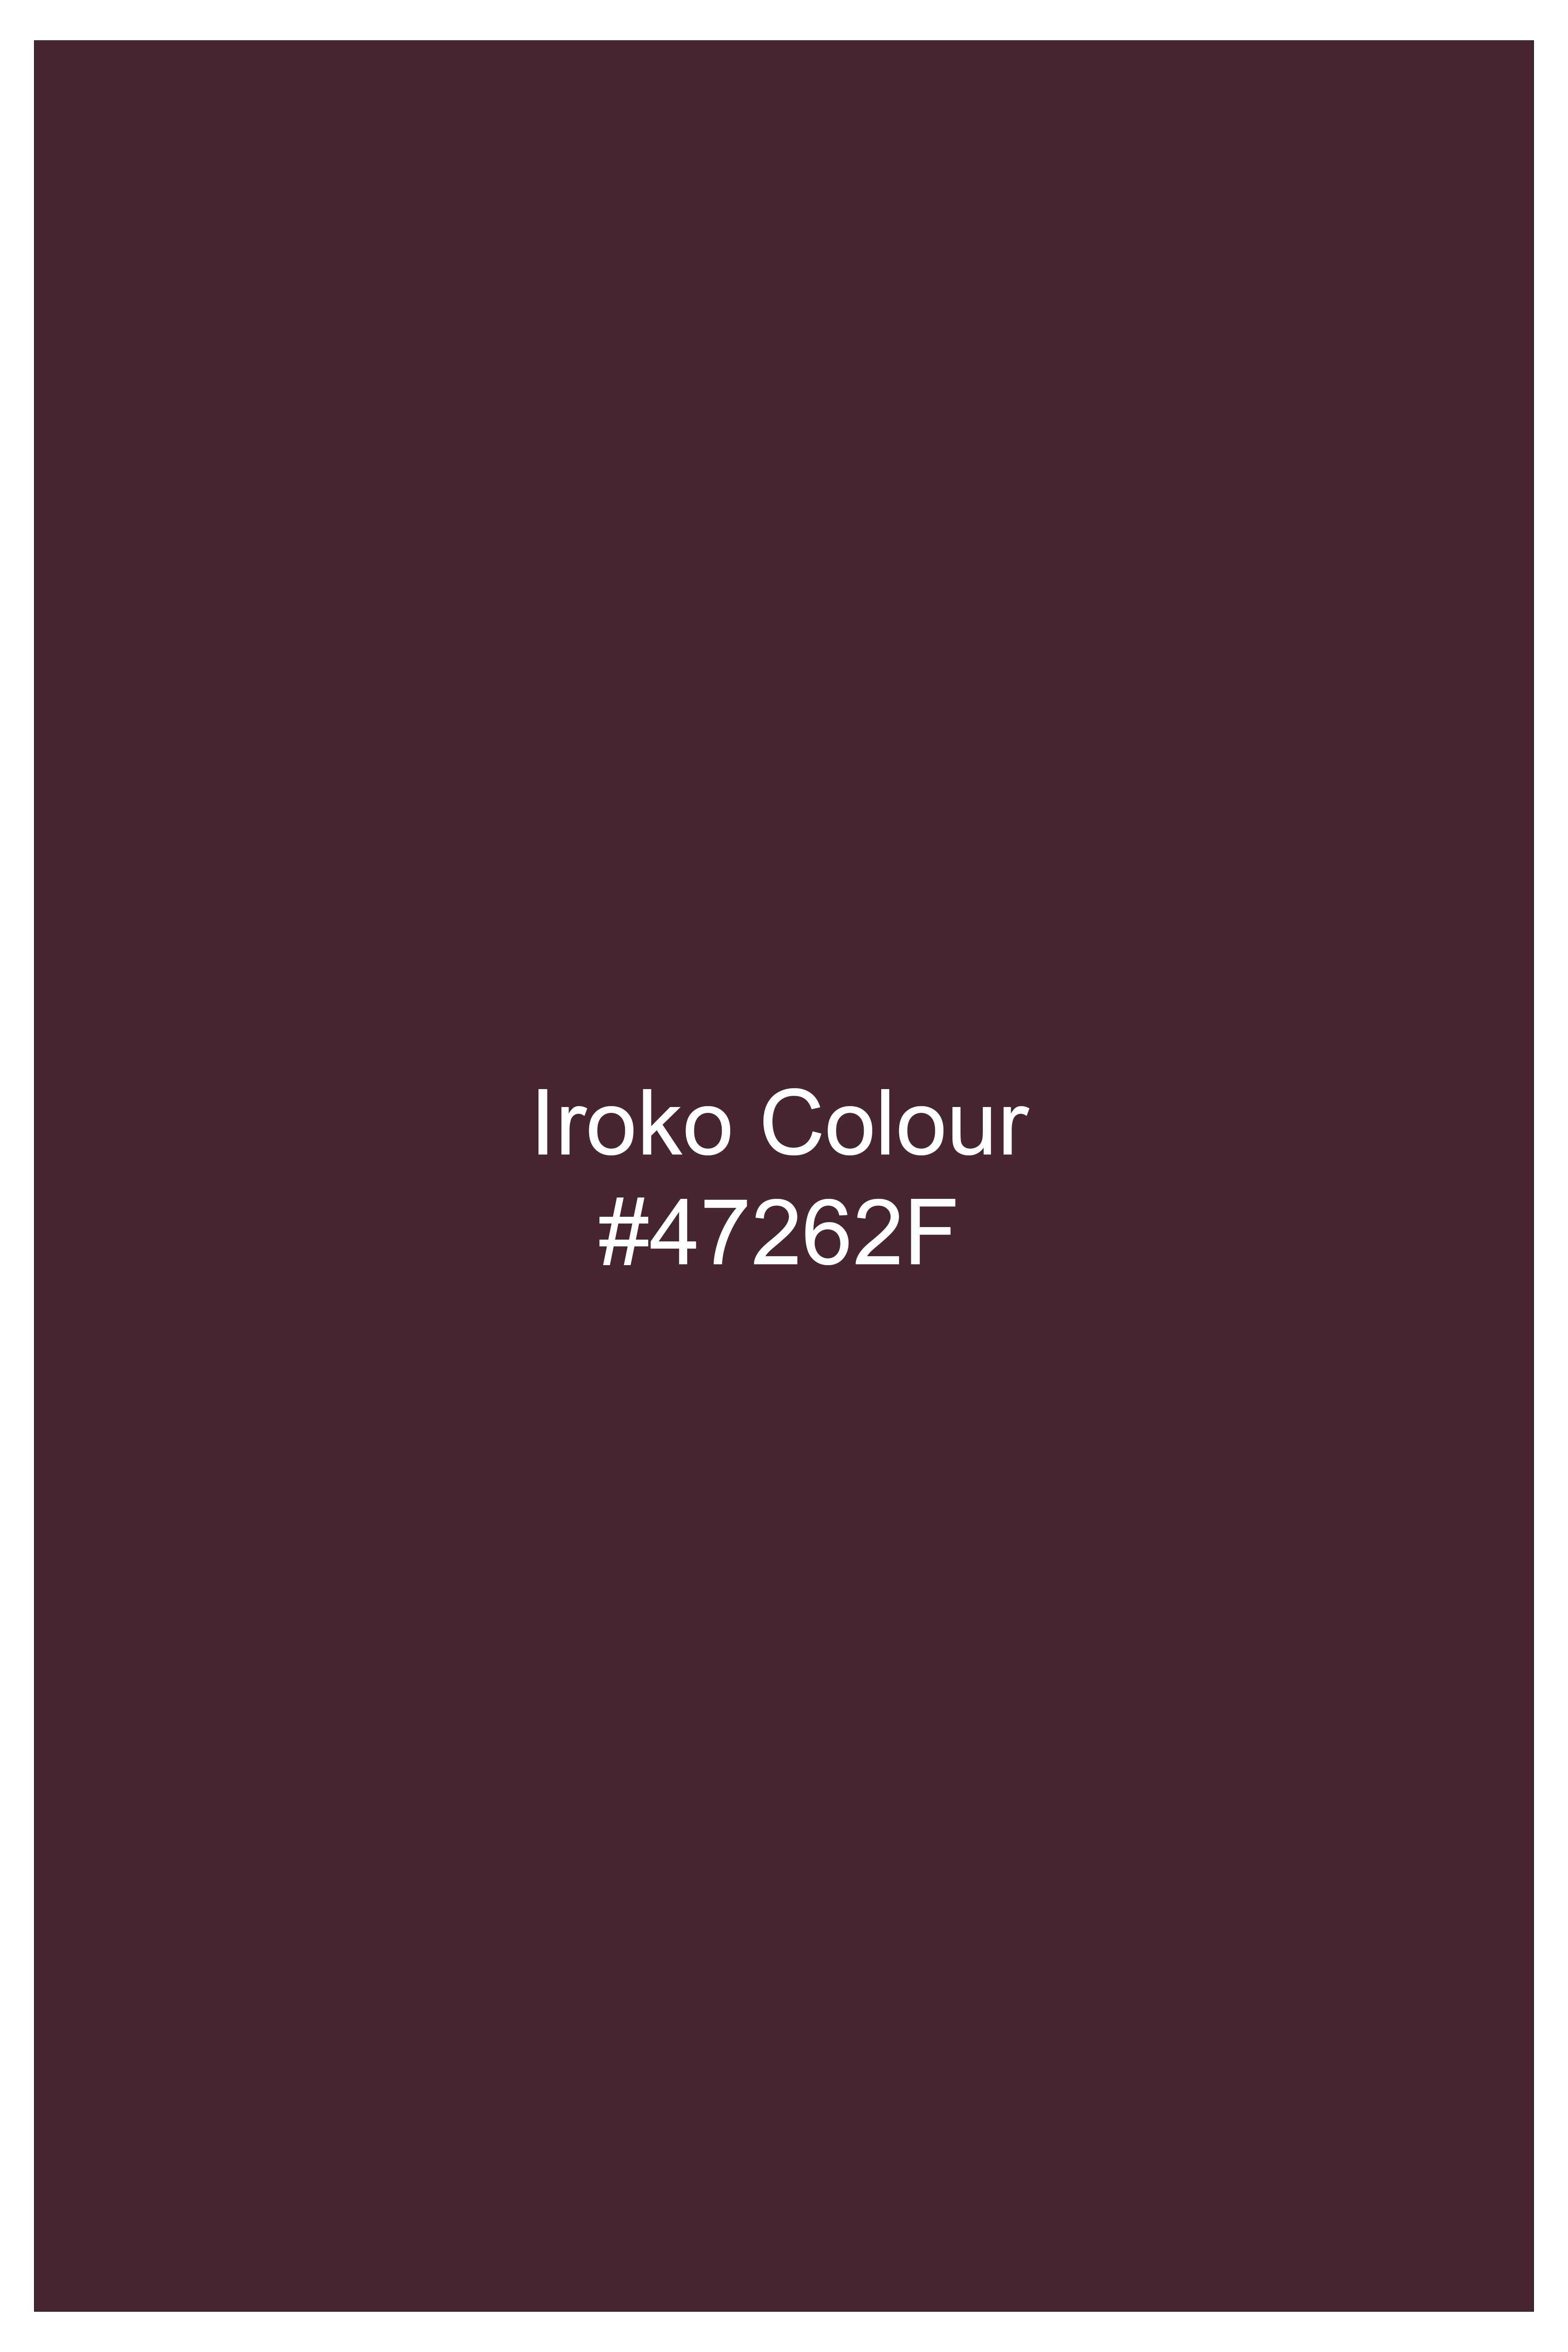 Iroko maroon Windowpane Wool Rich Tuxedo Blazer